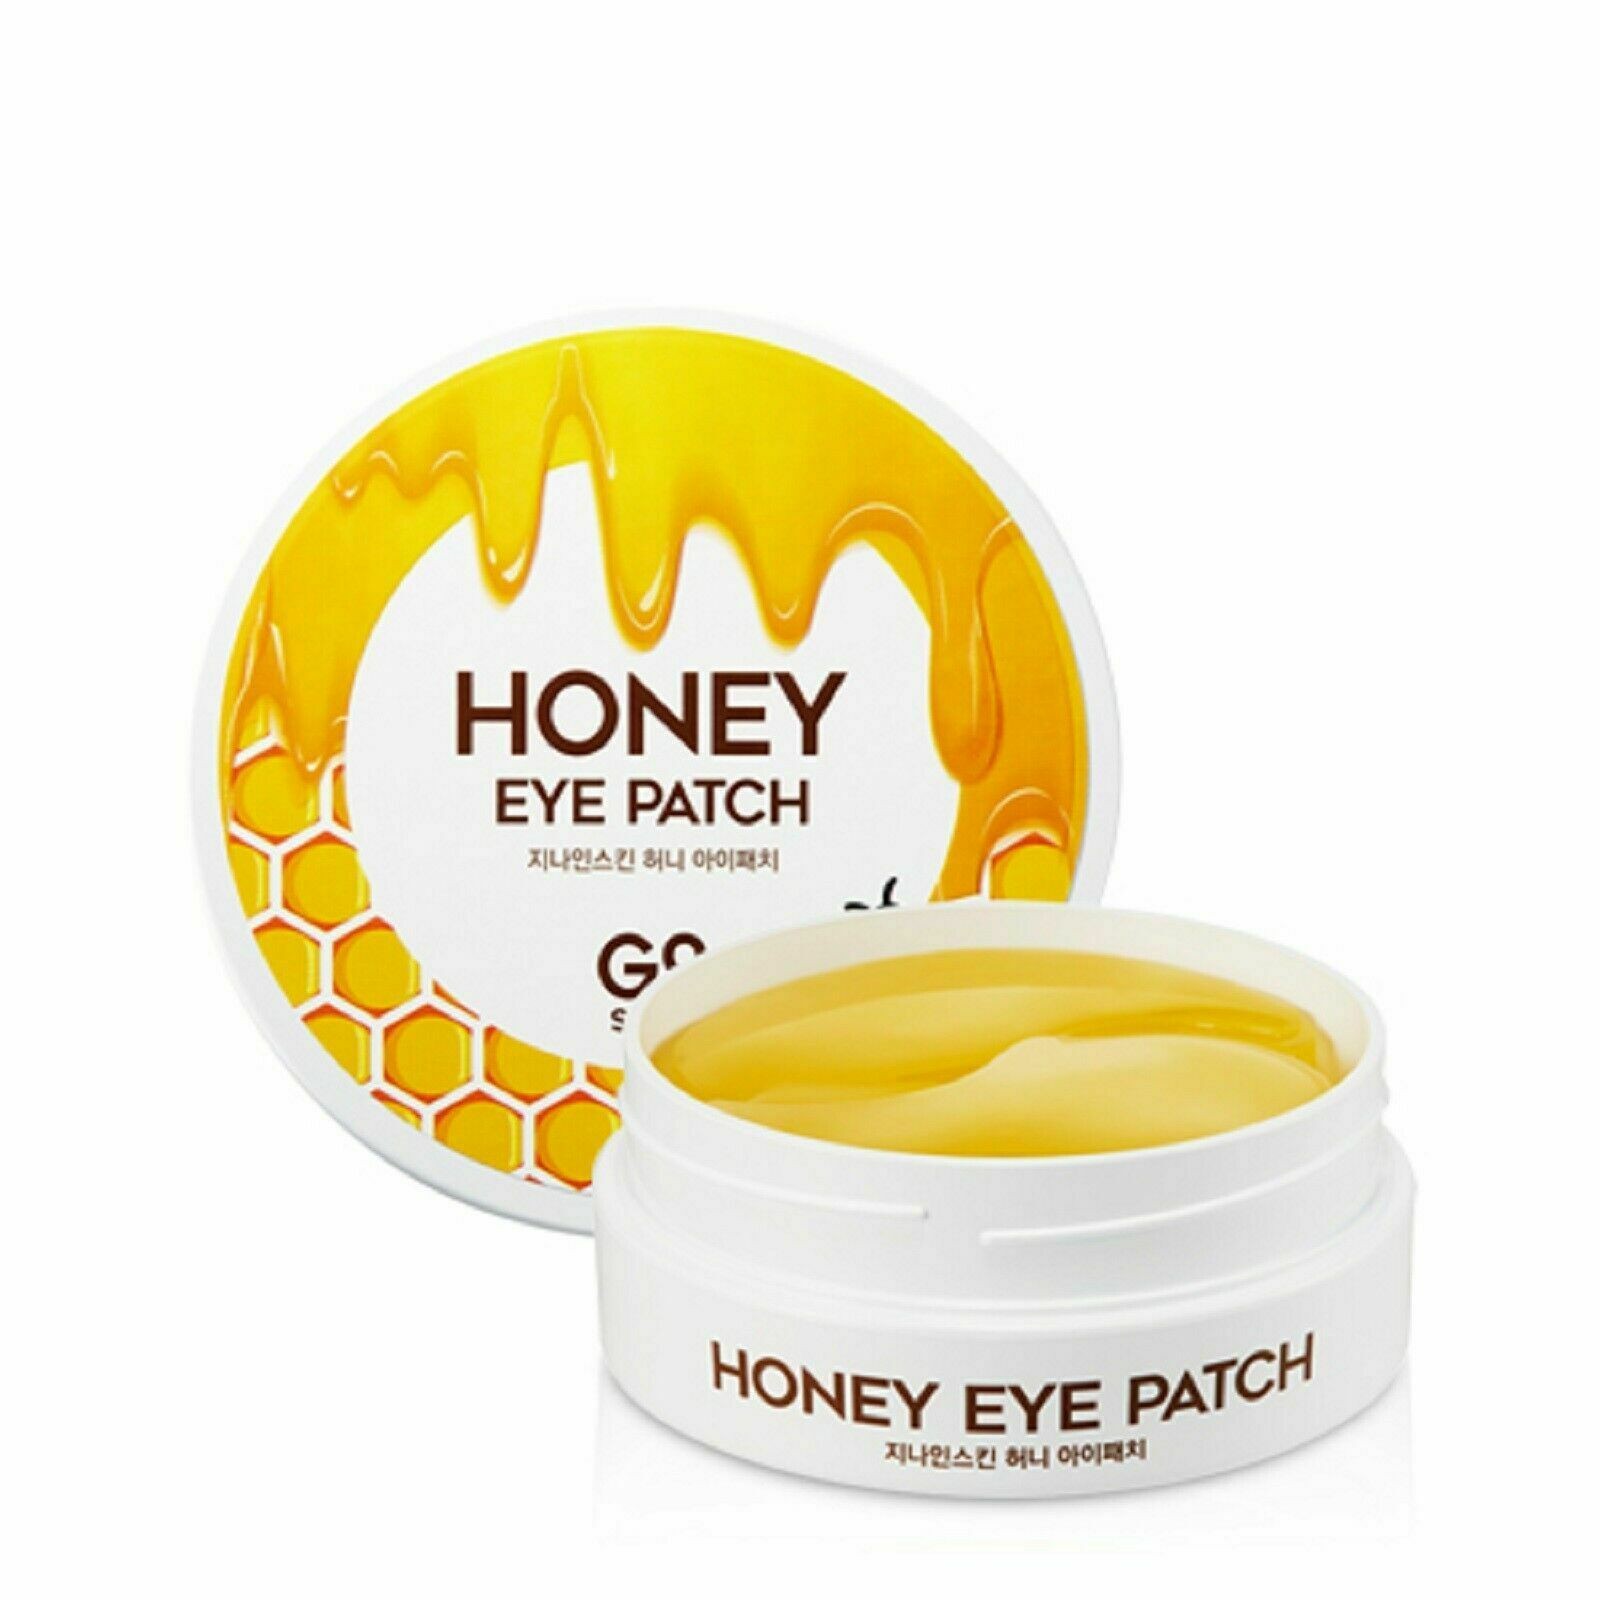 G9SKIN - Honey Eye Patch